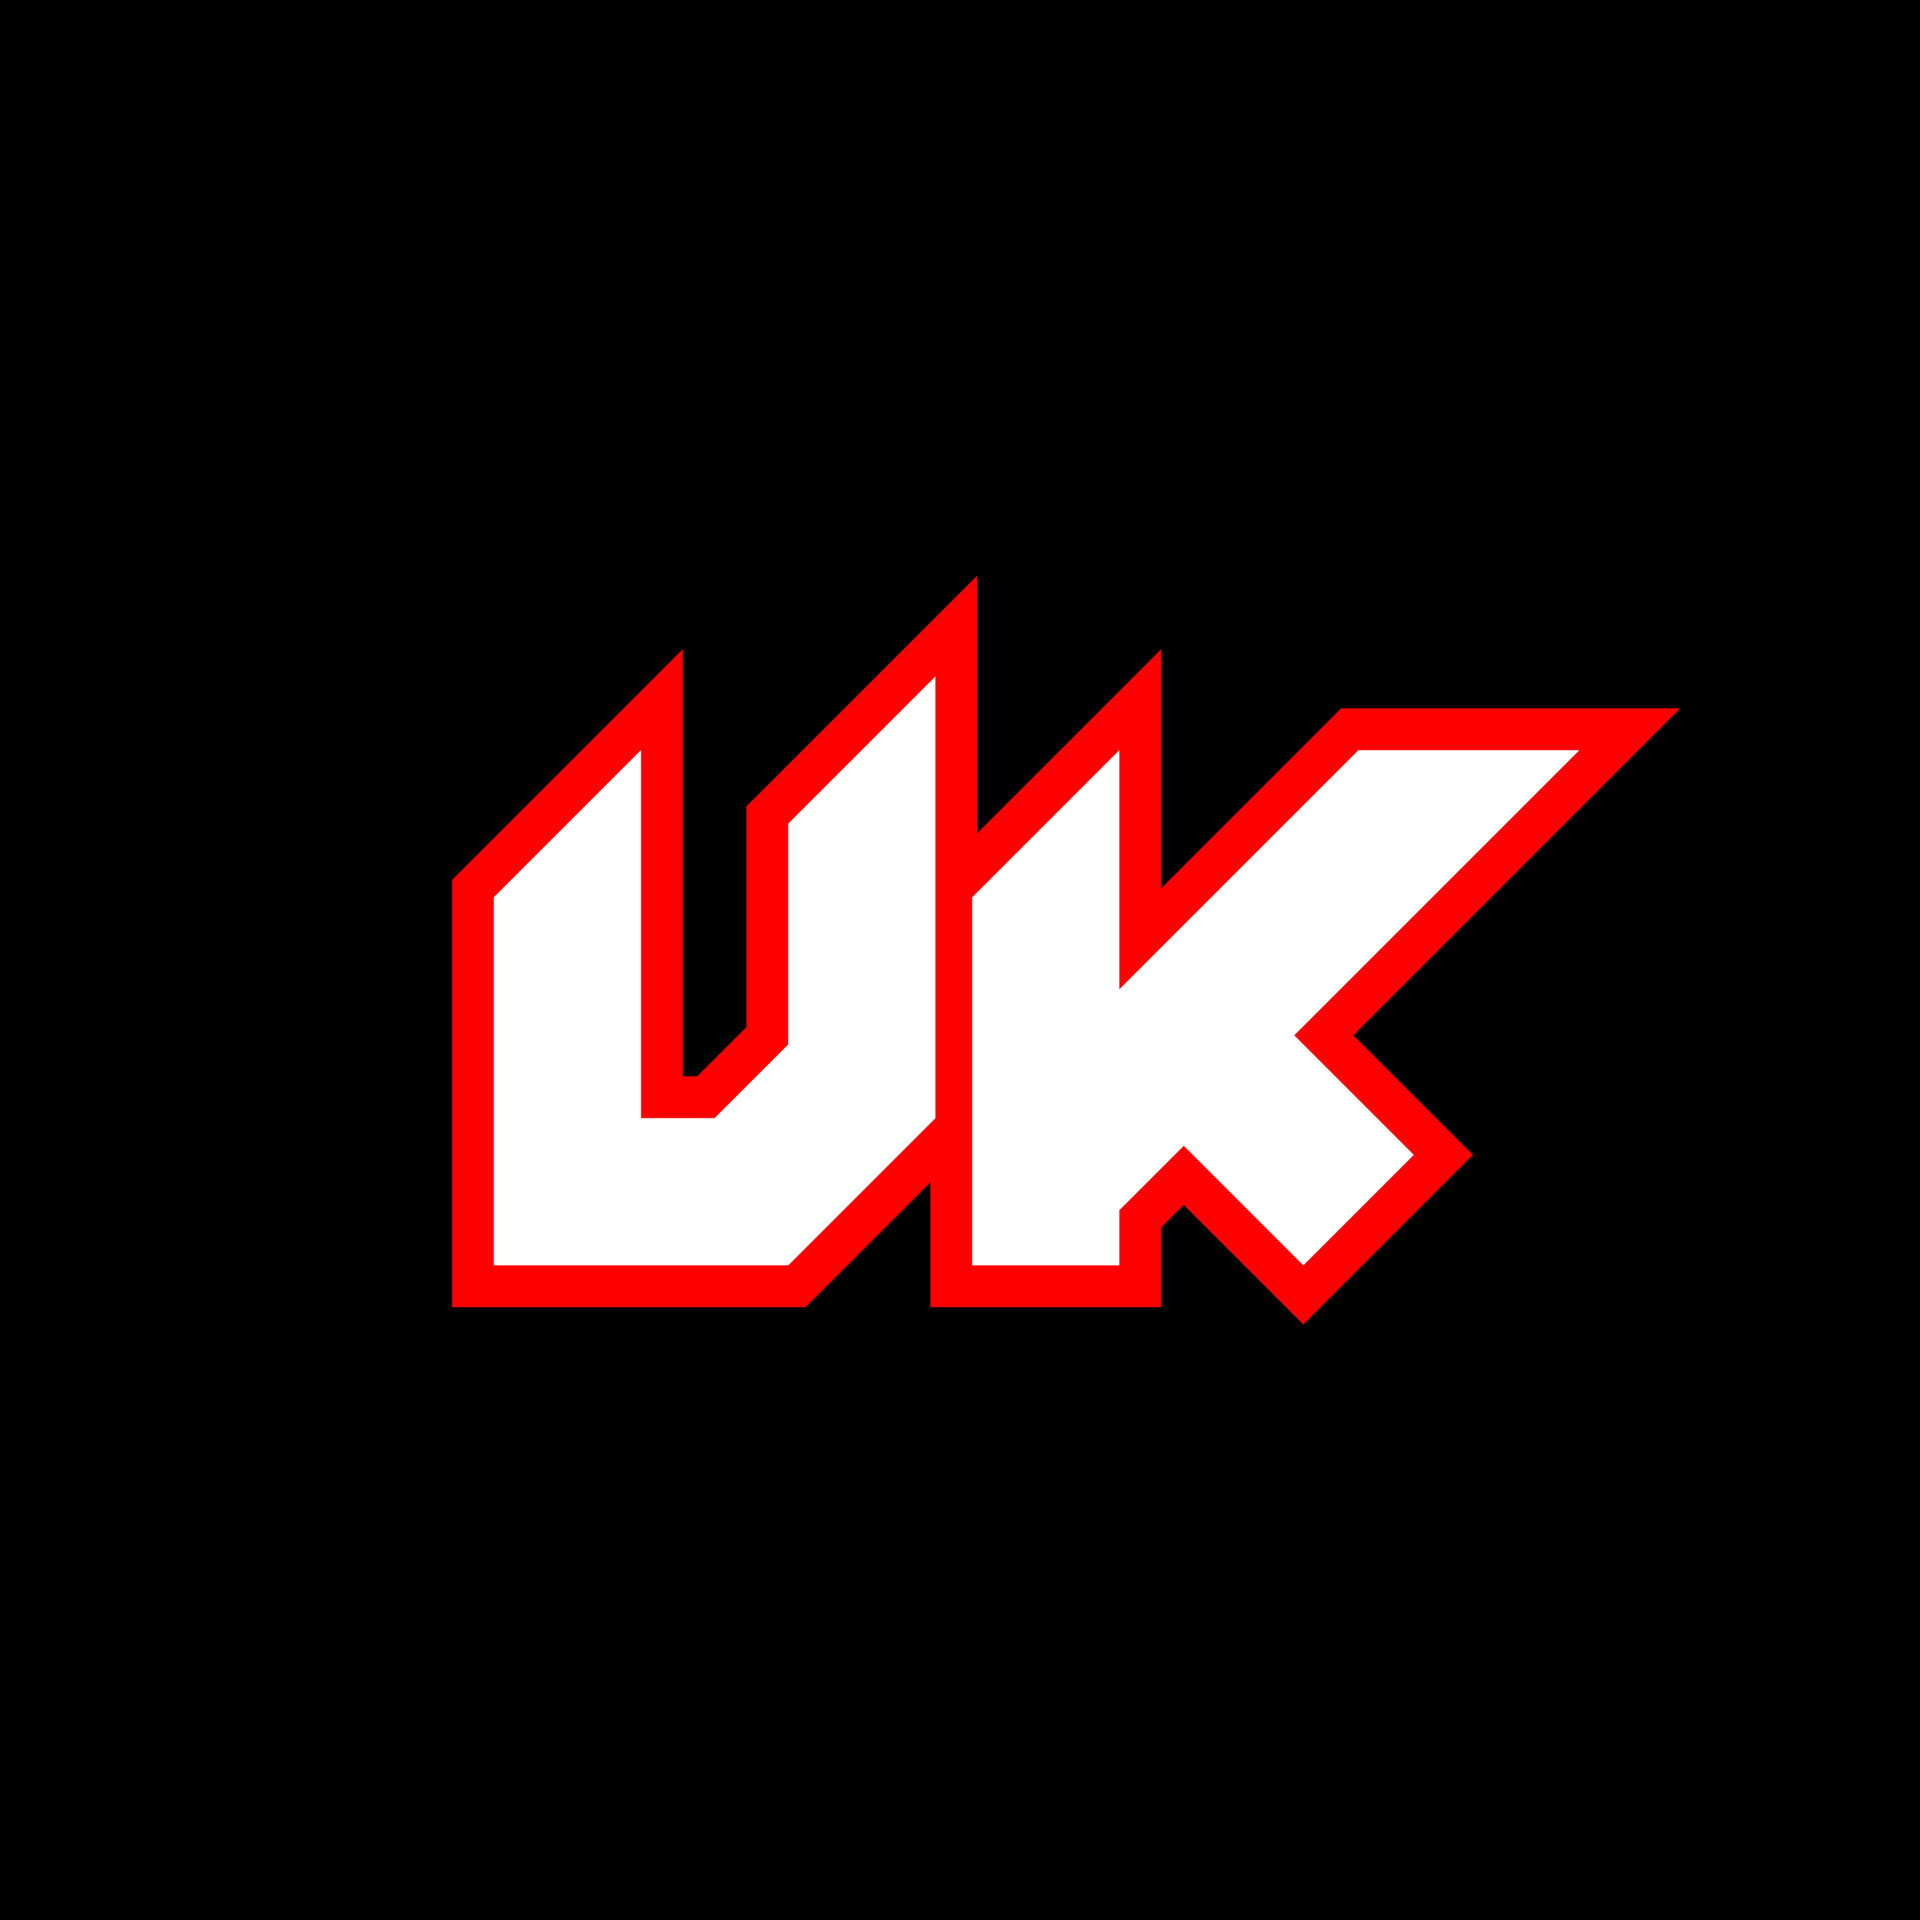 design de logotipo do Reino Unido, design de letra inicial do